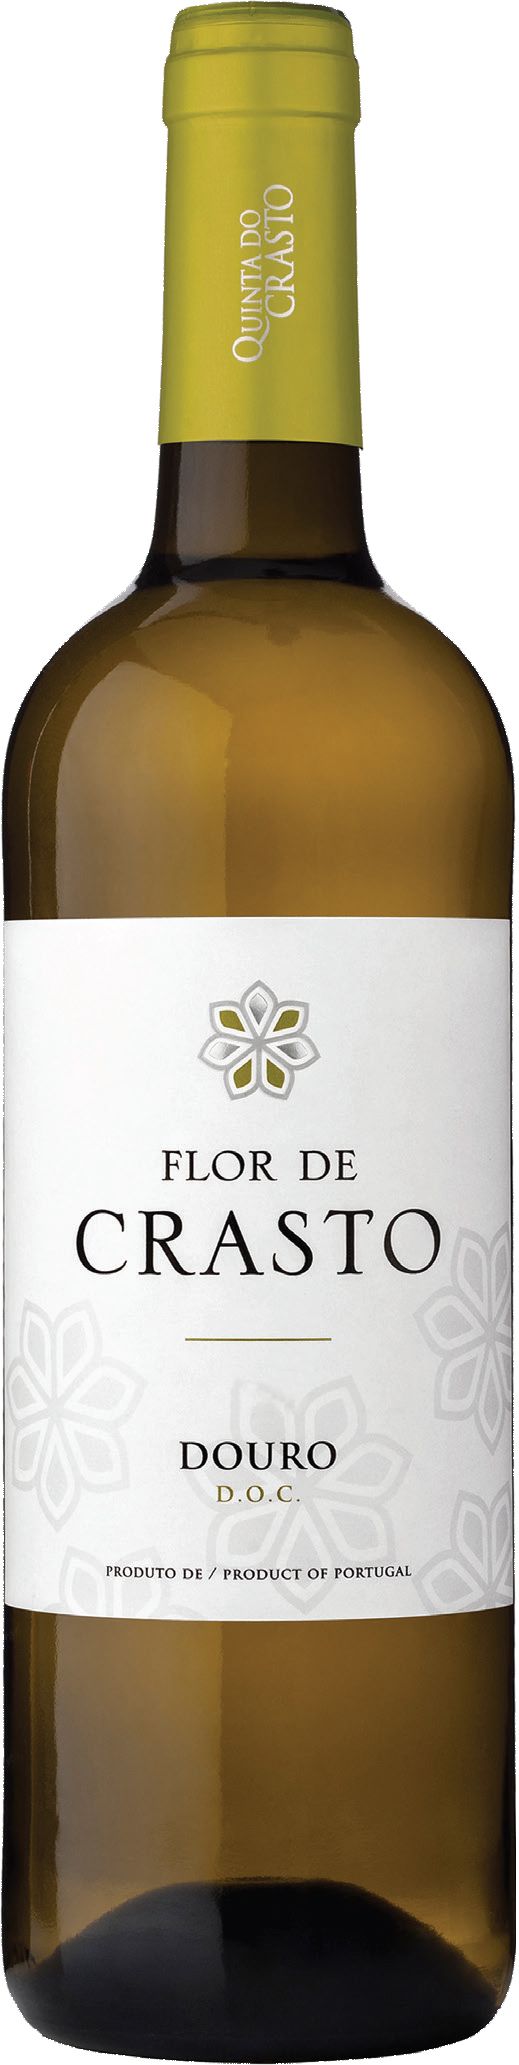 Quinta Do Crasto, Flor De Crasto Branco, 2016